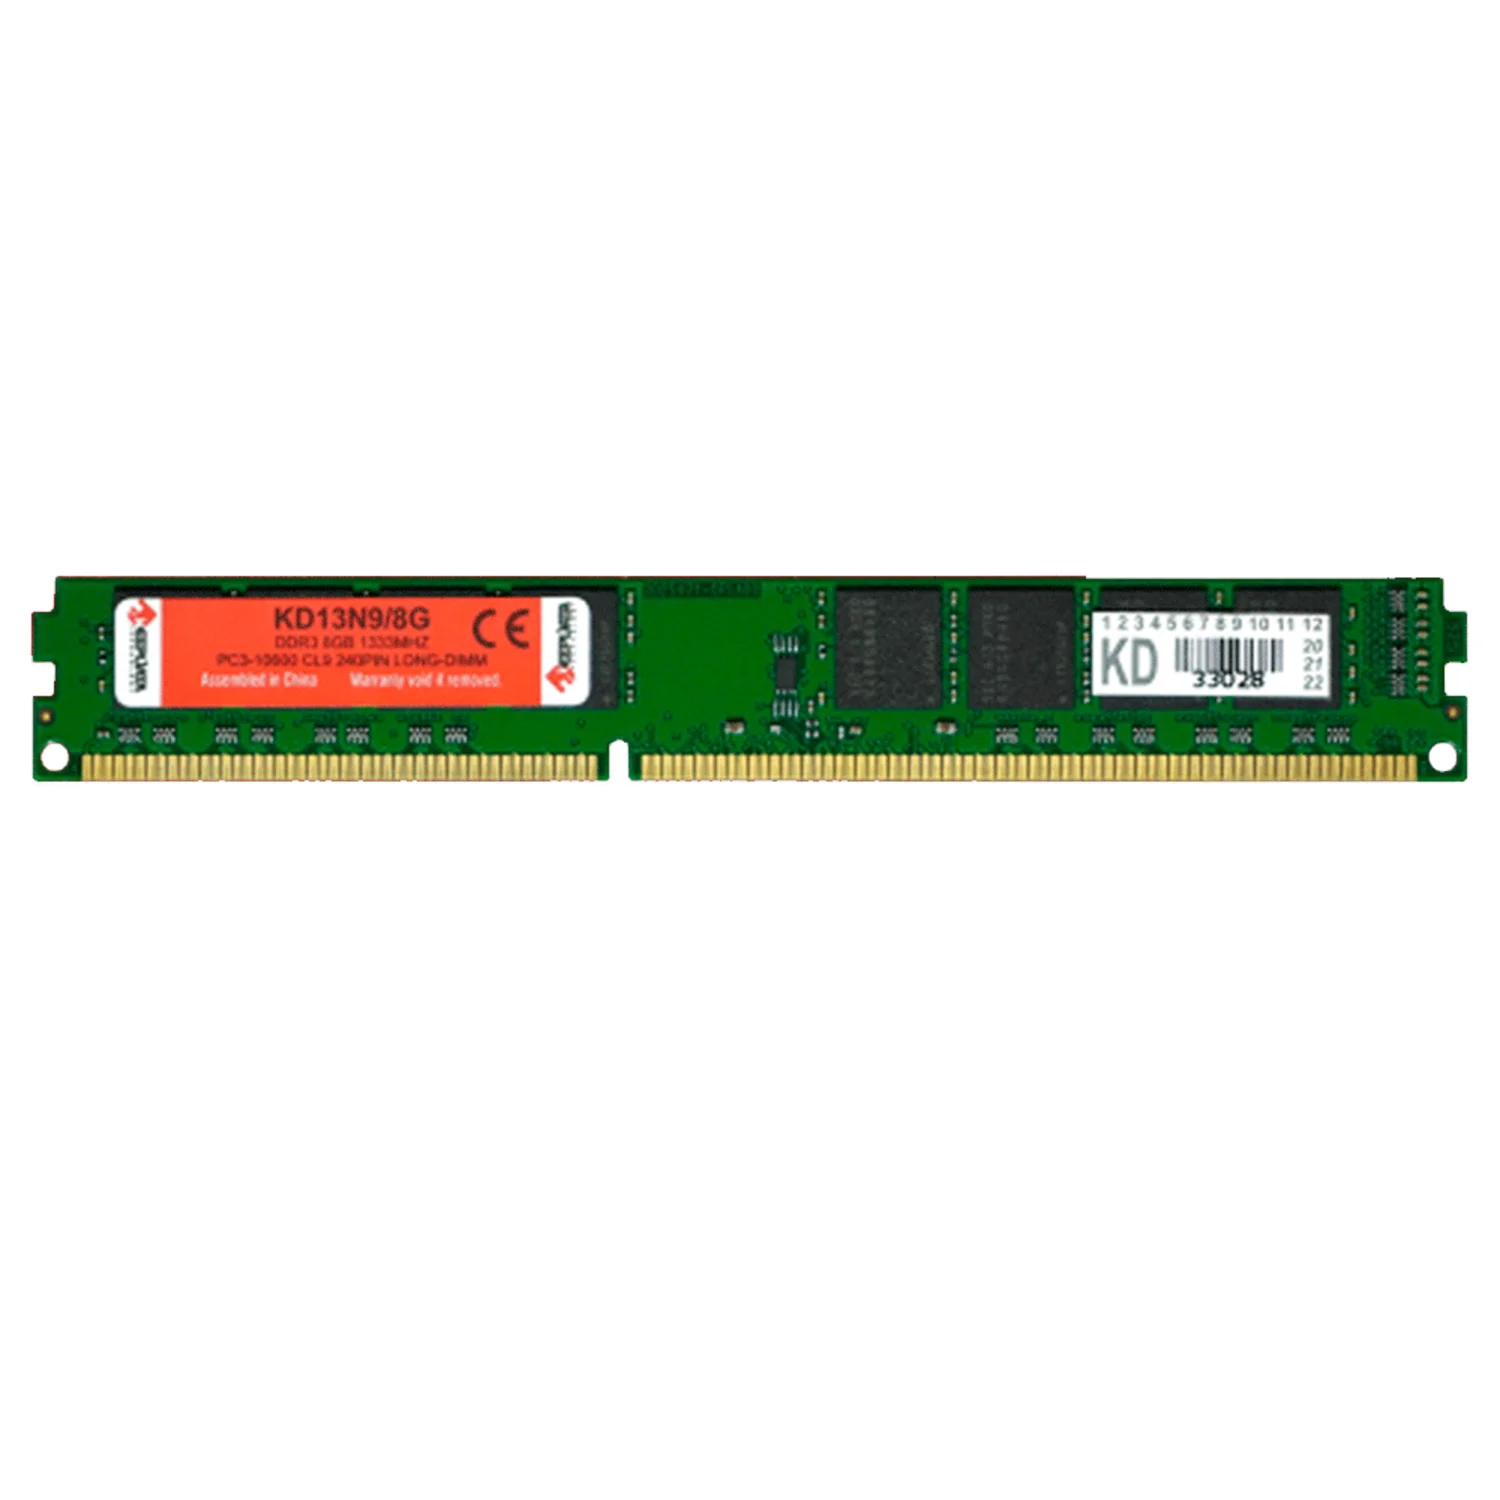 Memória RAM Keepdata 8GB / DDR3 / 1333mhz / 1x8GB (KD13N9/8G)